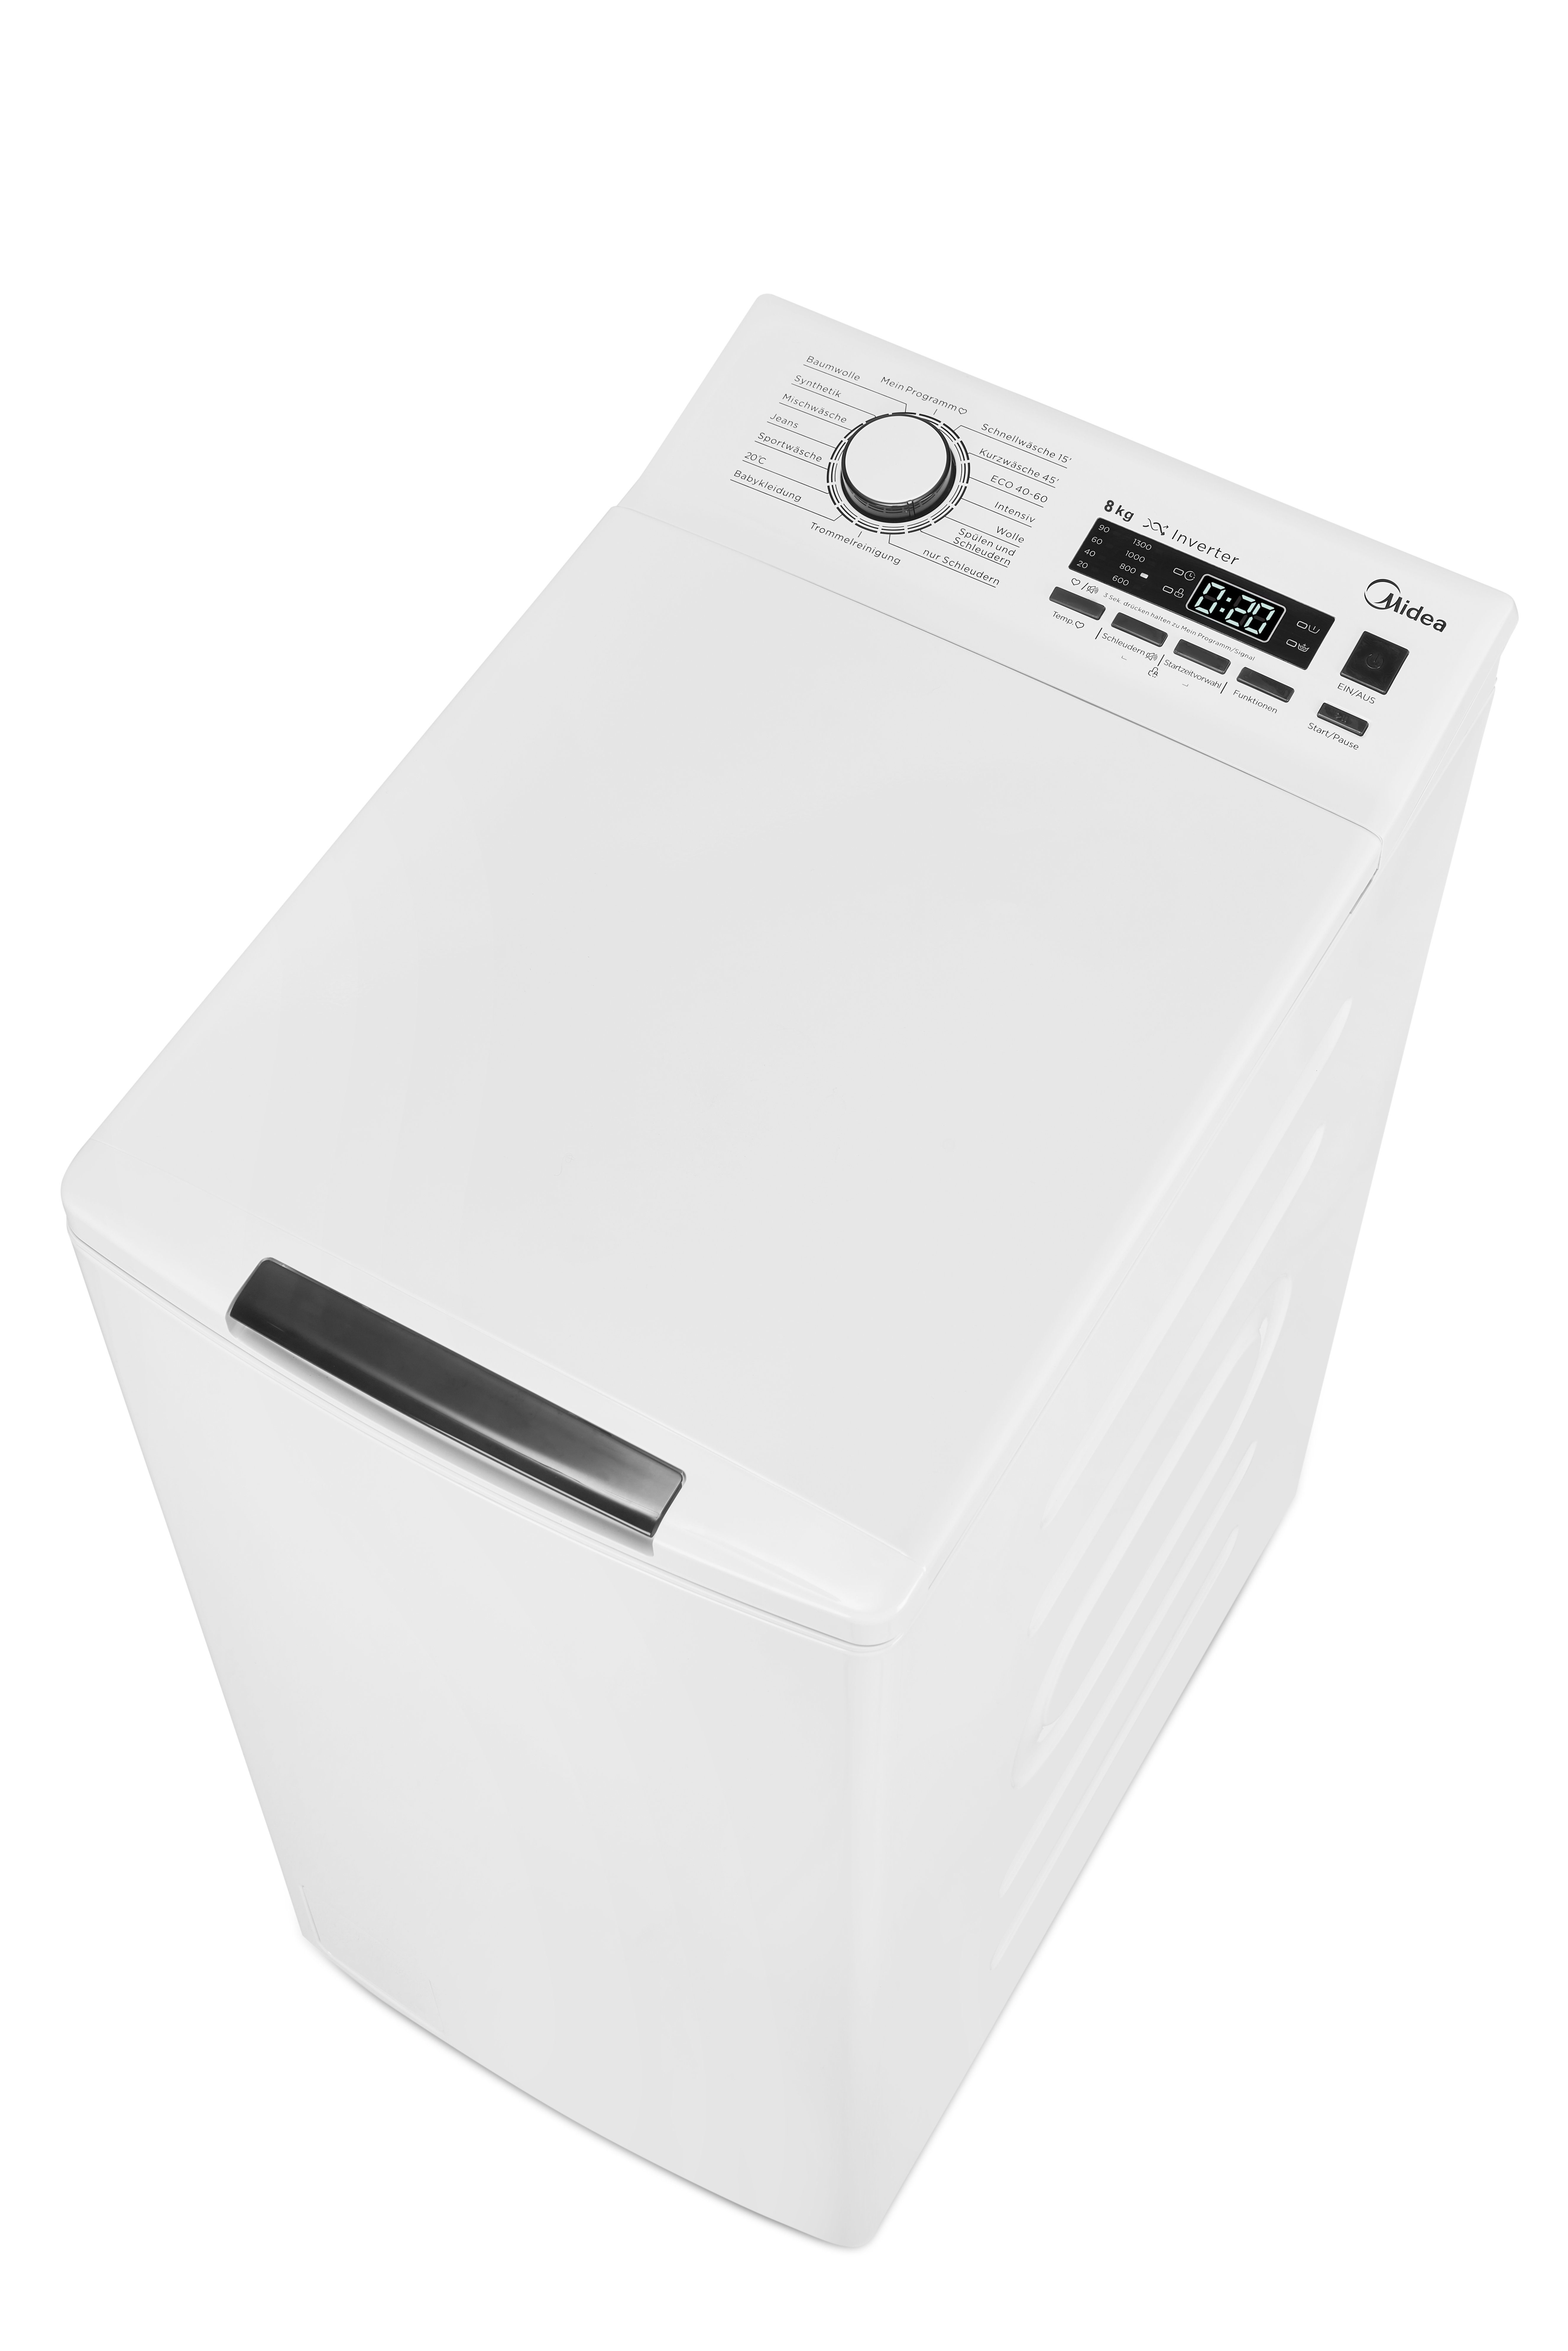 Midea Waschmaschine Toplader Serie 7 7.83i Opener, 1300 U/min, Soft 8 TW Trommelreinigung diN, kg